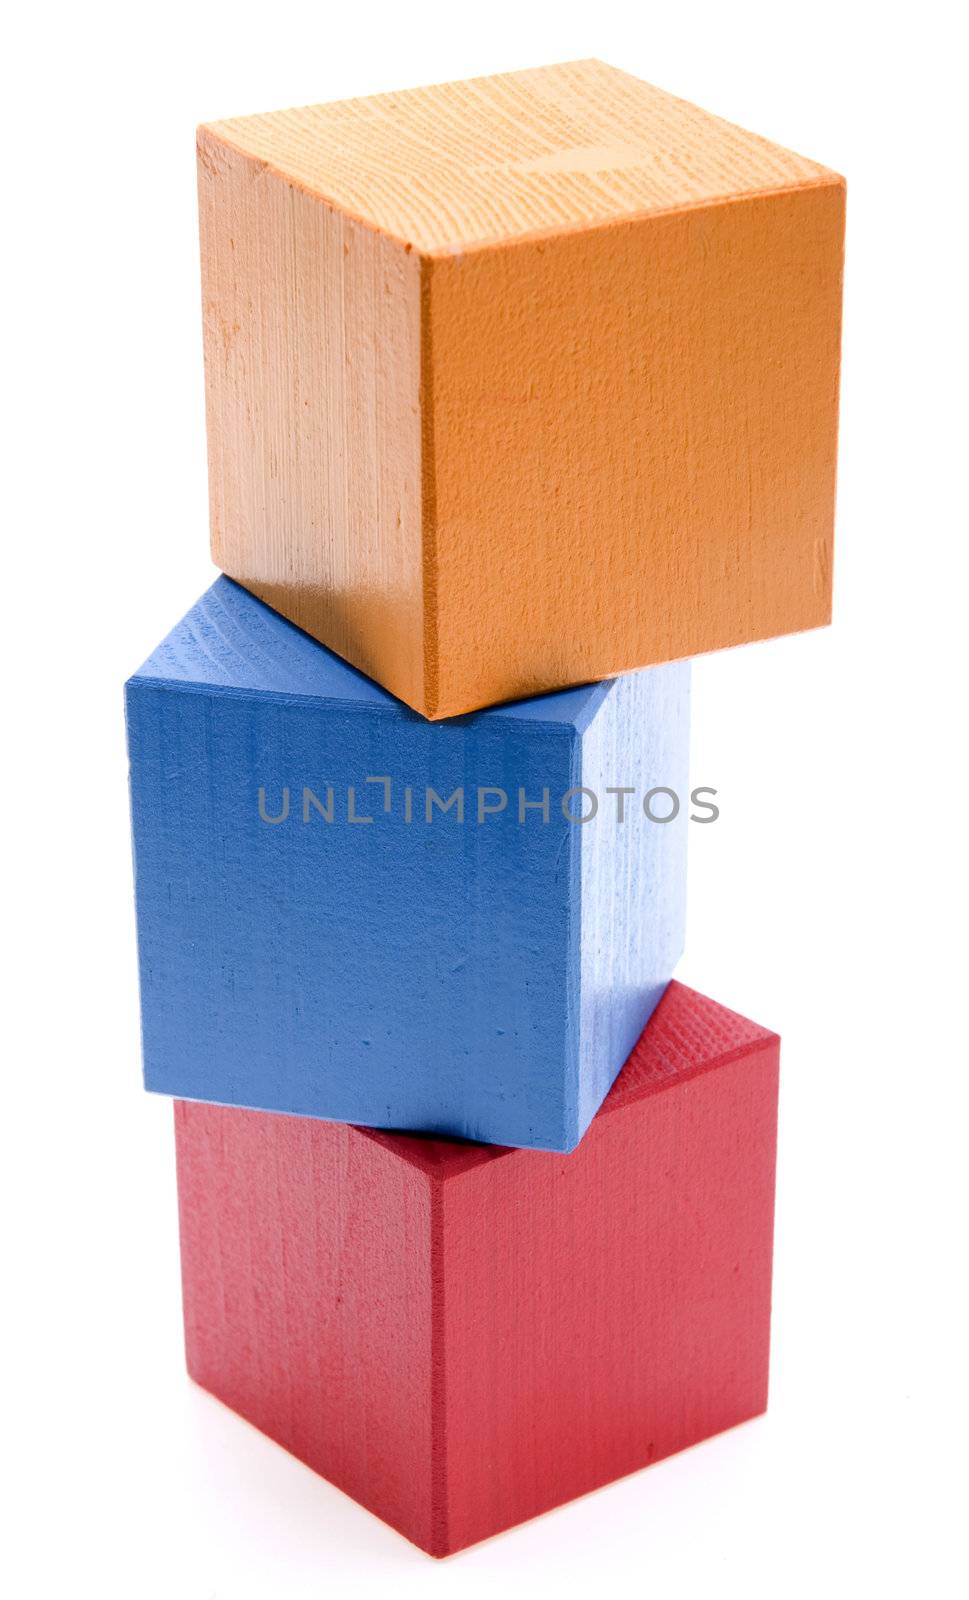 Toy Blocks by bakalusha